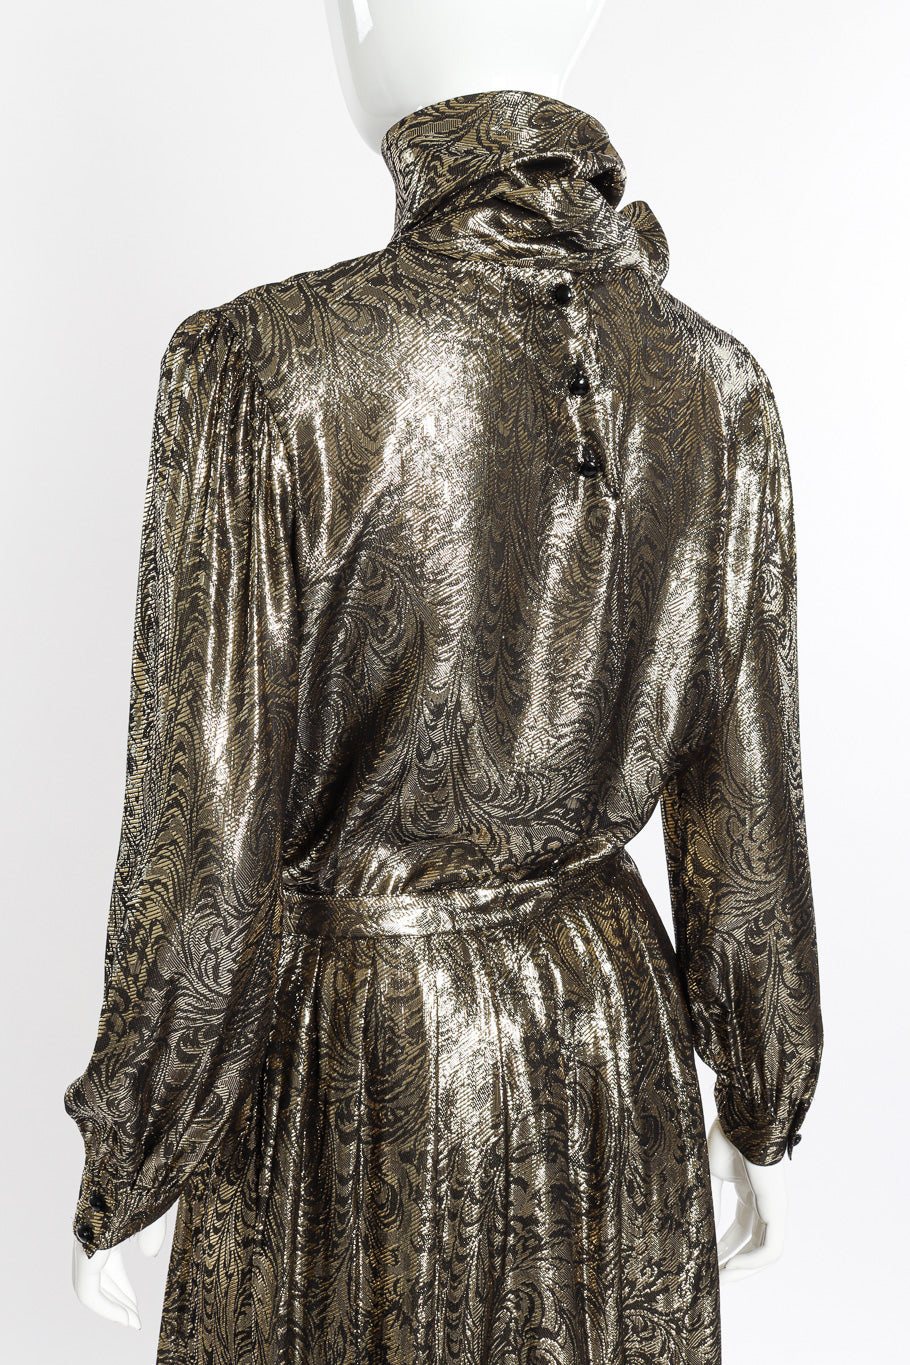 Vintage Nolan Miller Lamé Jacquard Blouse & Skirt Set back on mannequin @recessla